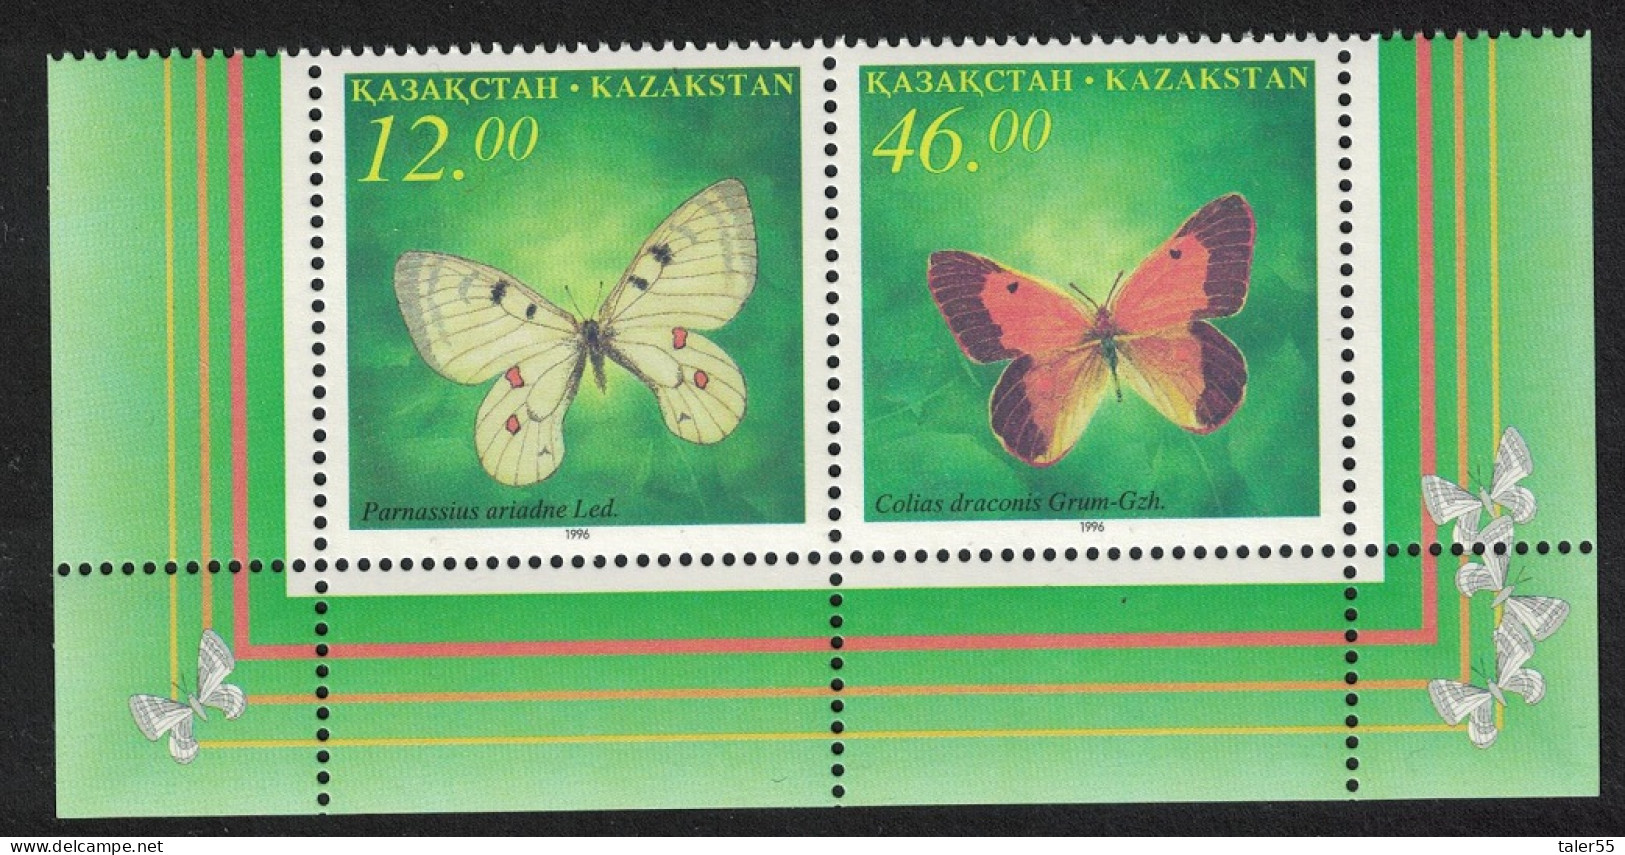 Kazakhstan Butterflies 2v Pair High Values 1996 MNH SG#138-139 - Kazajstán